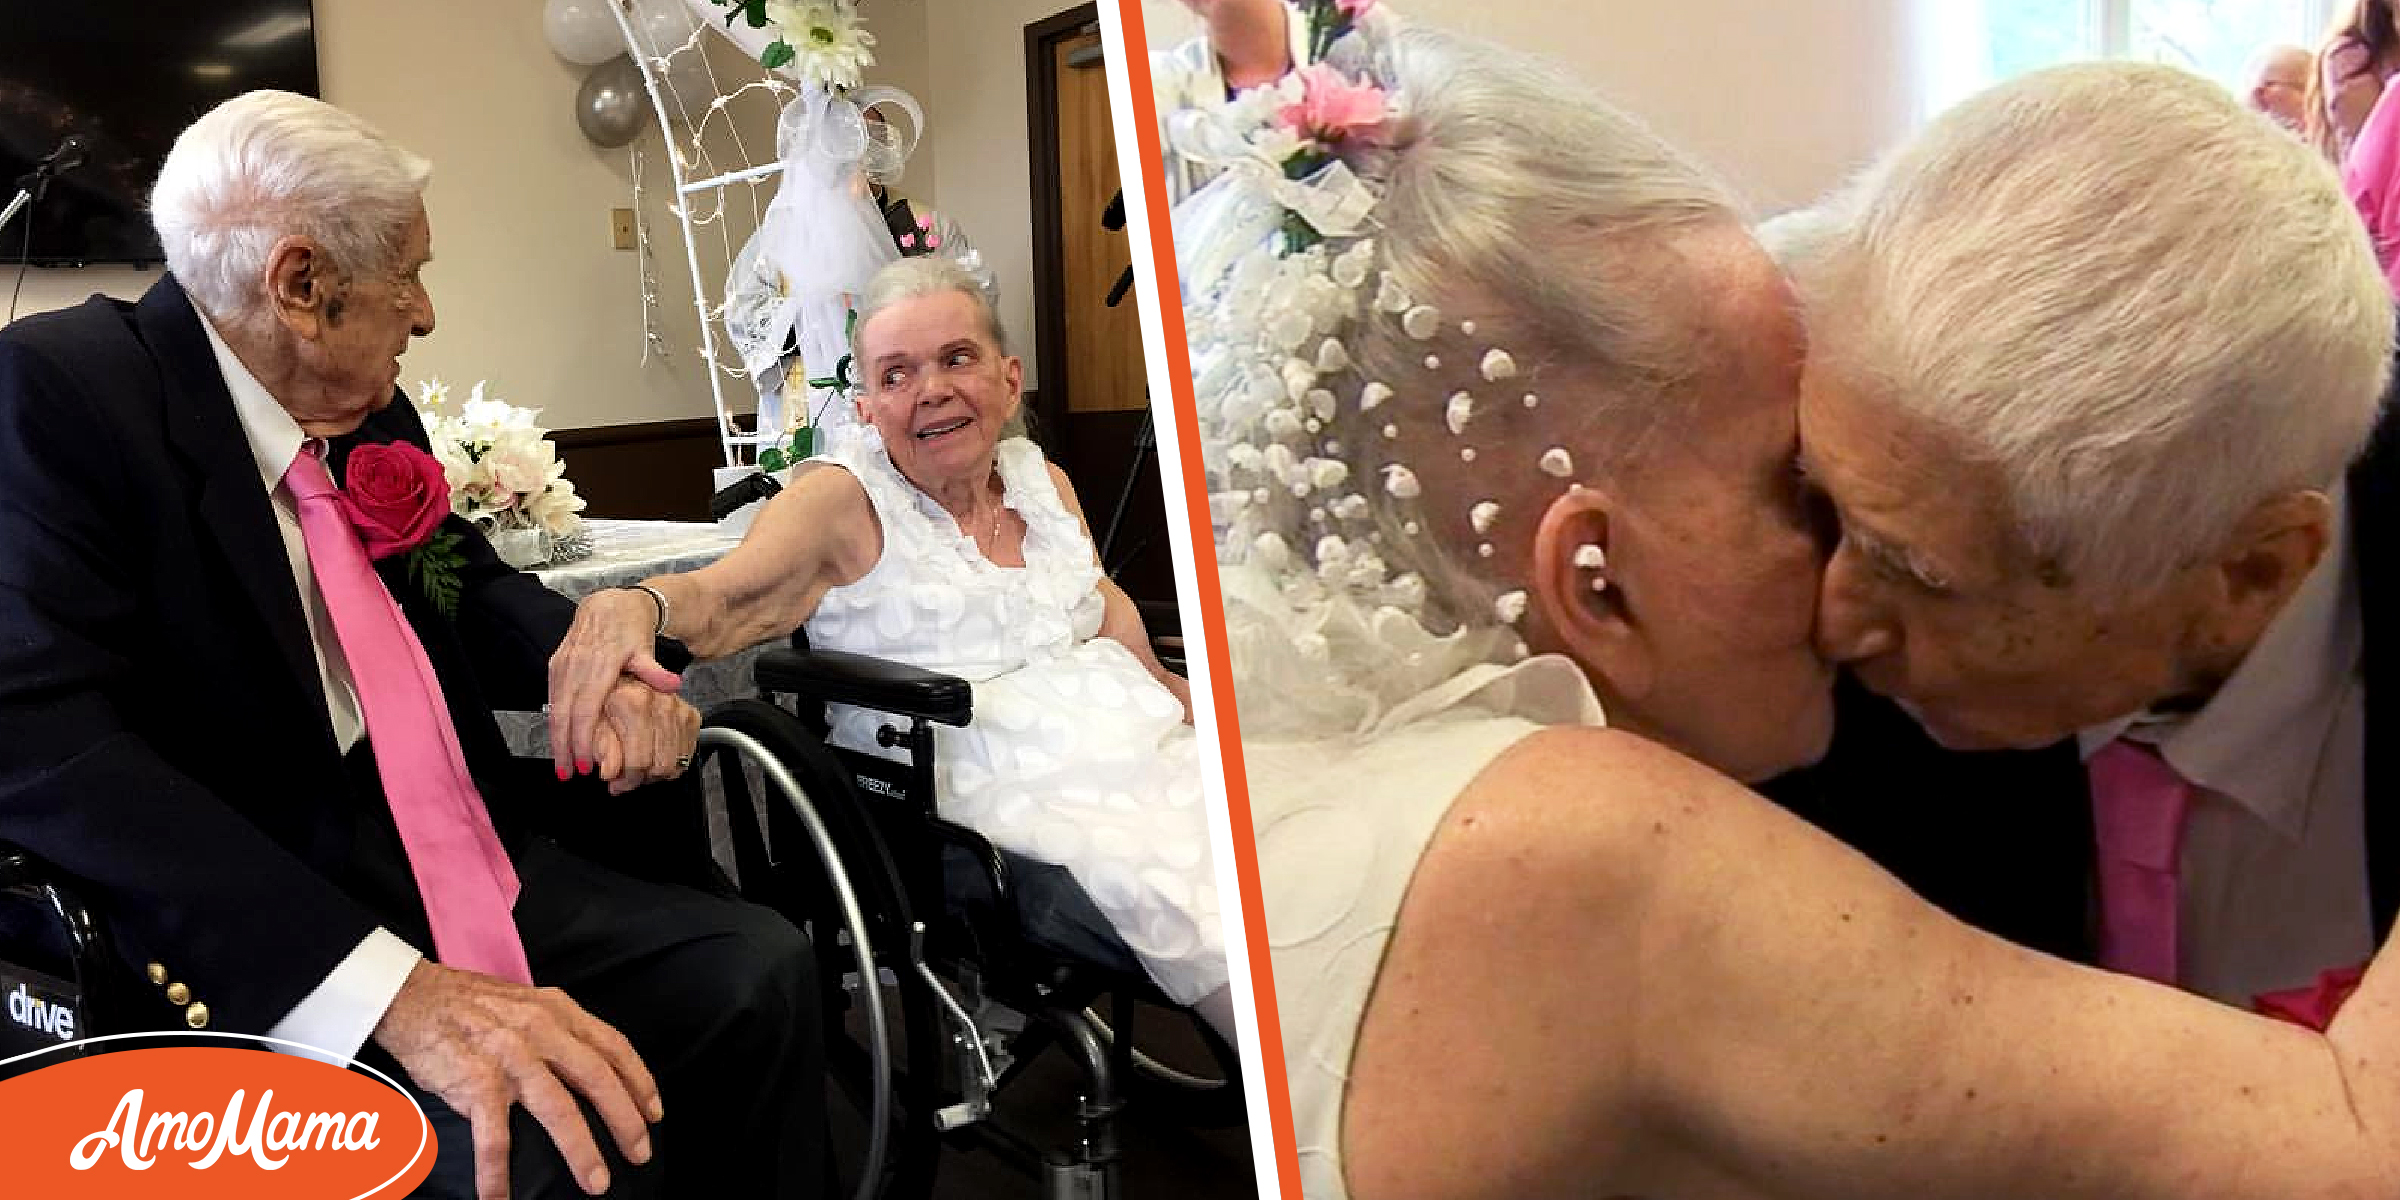 Un couple renouvelle ses vœux dans une maison de retraite 75 ans après s’être enfui de chez eux pour se marier